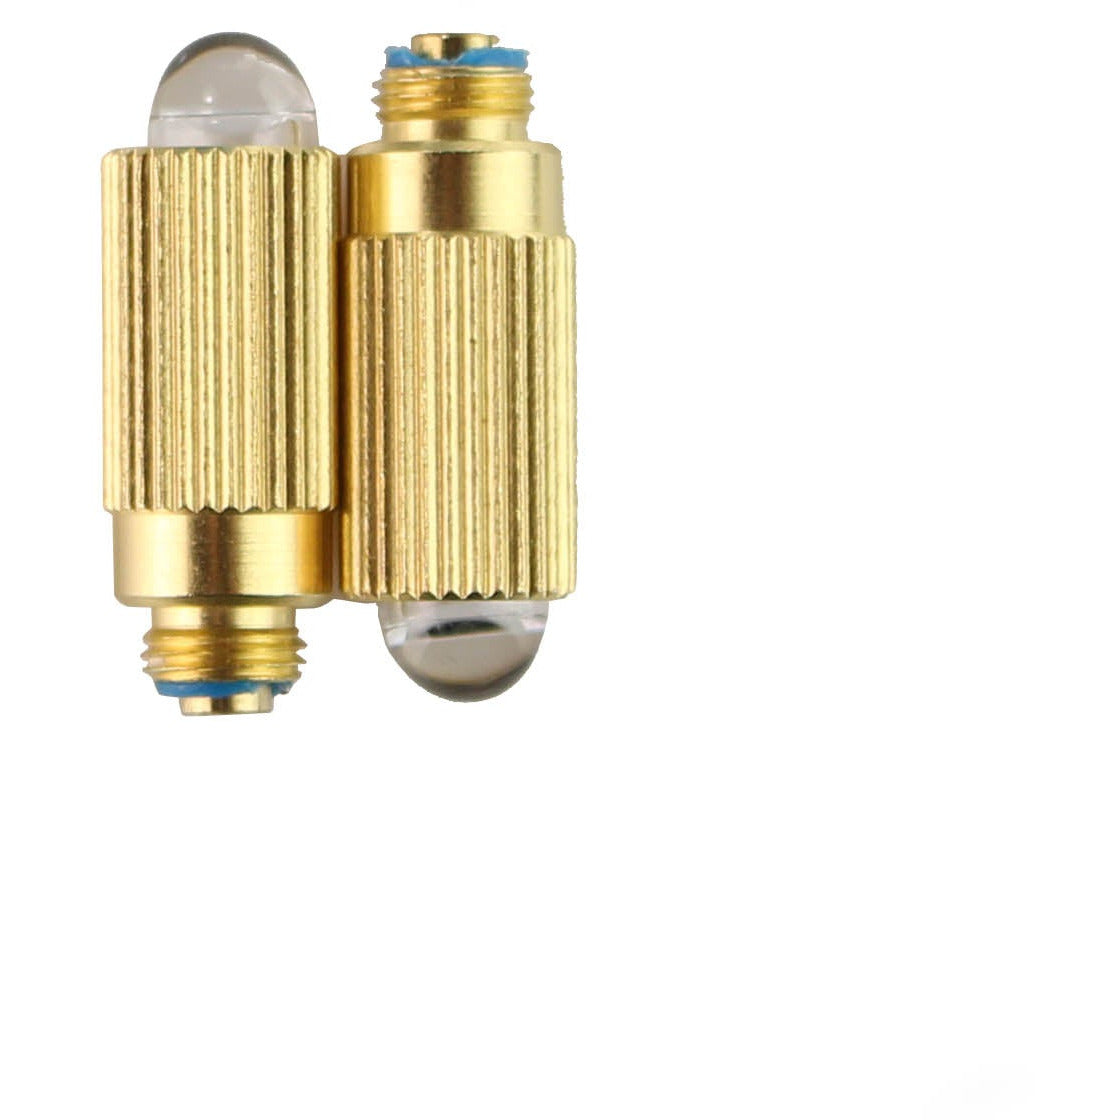 Keeler Standard/Pocket/Deluxe 2.8v Otoscope Bulb x 2